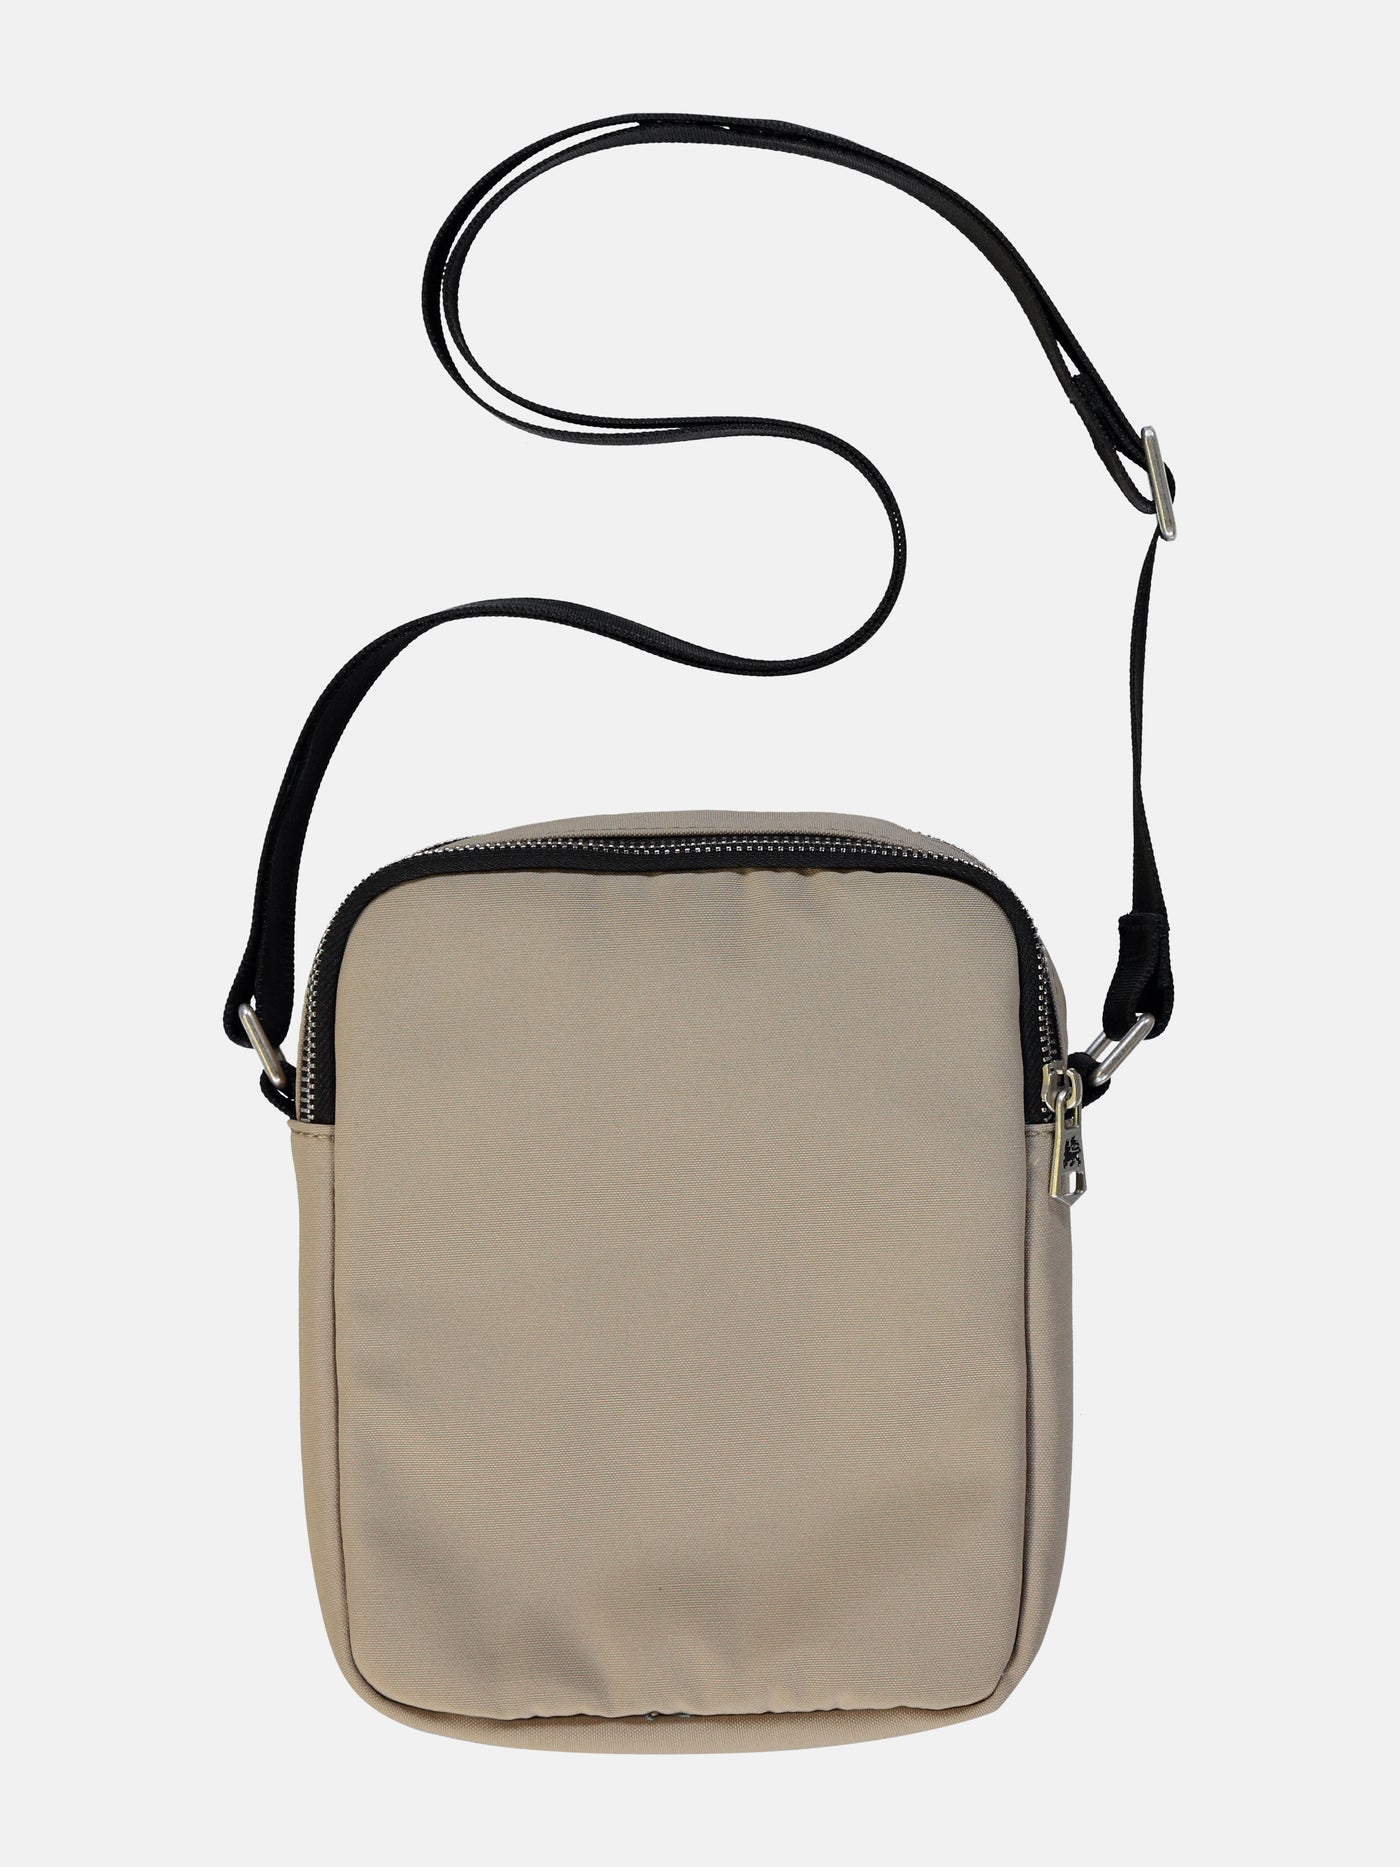 Simple shoulder bag